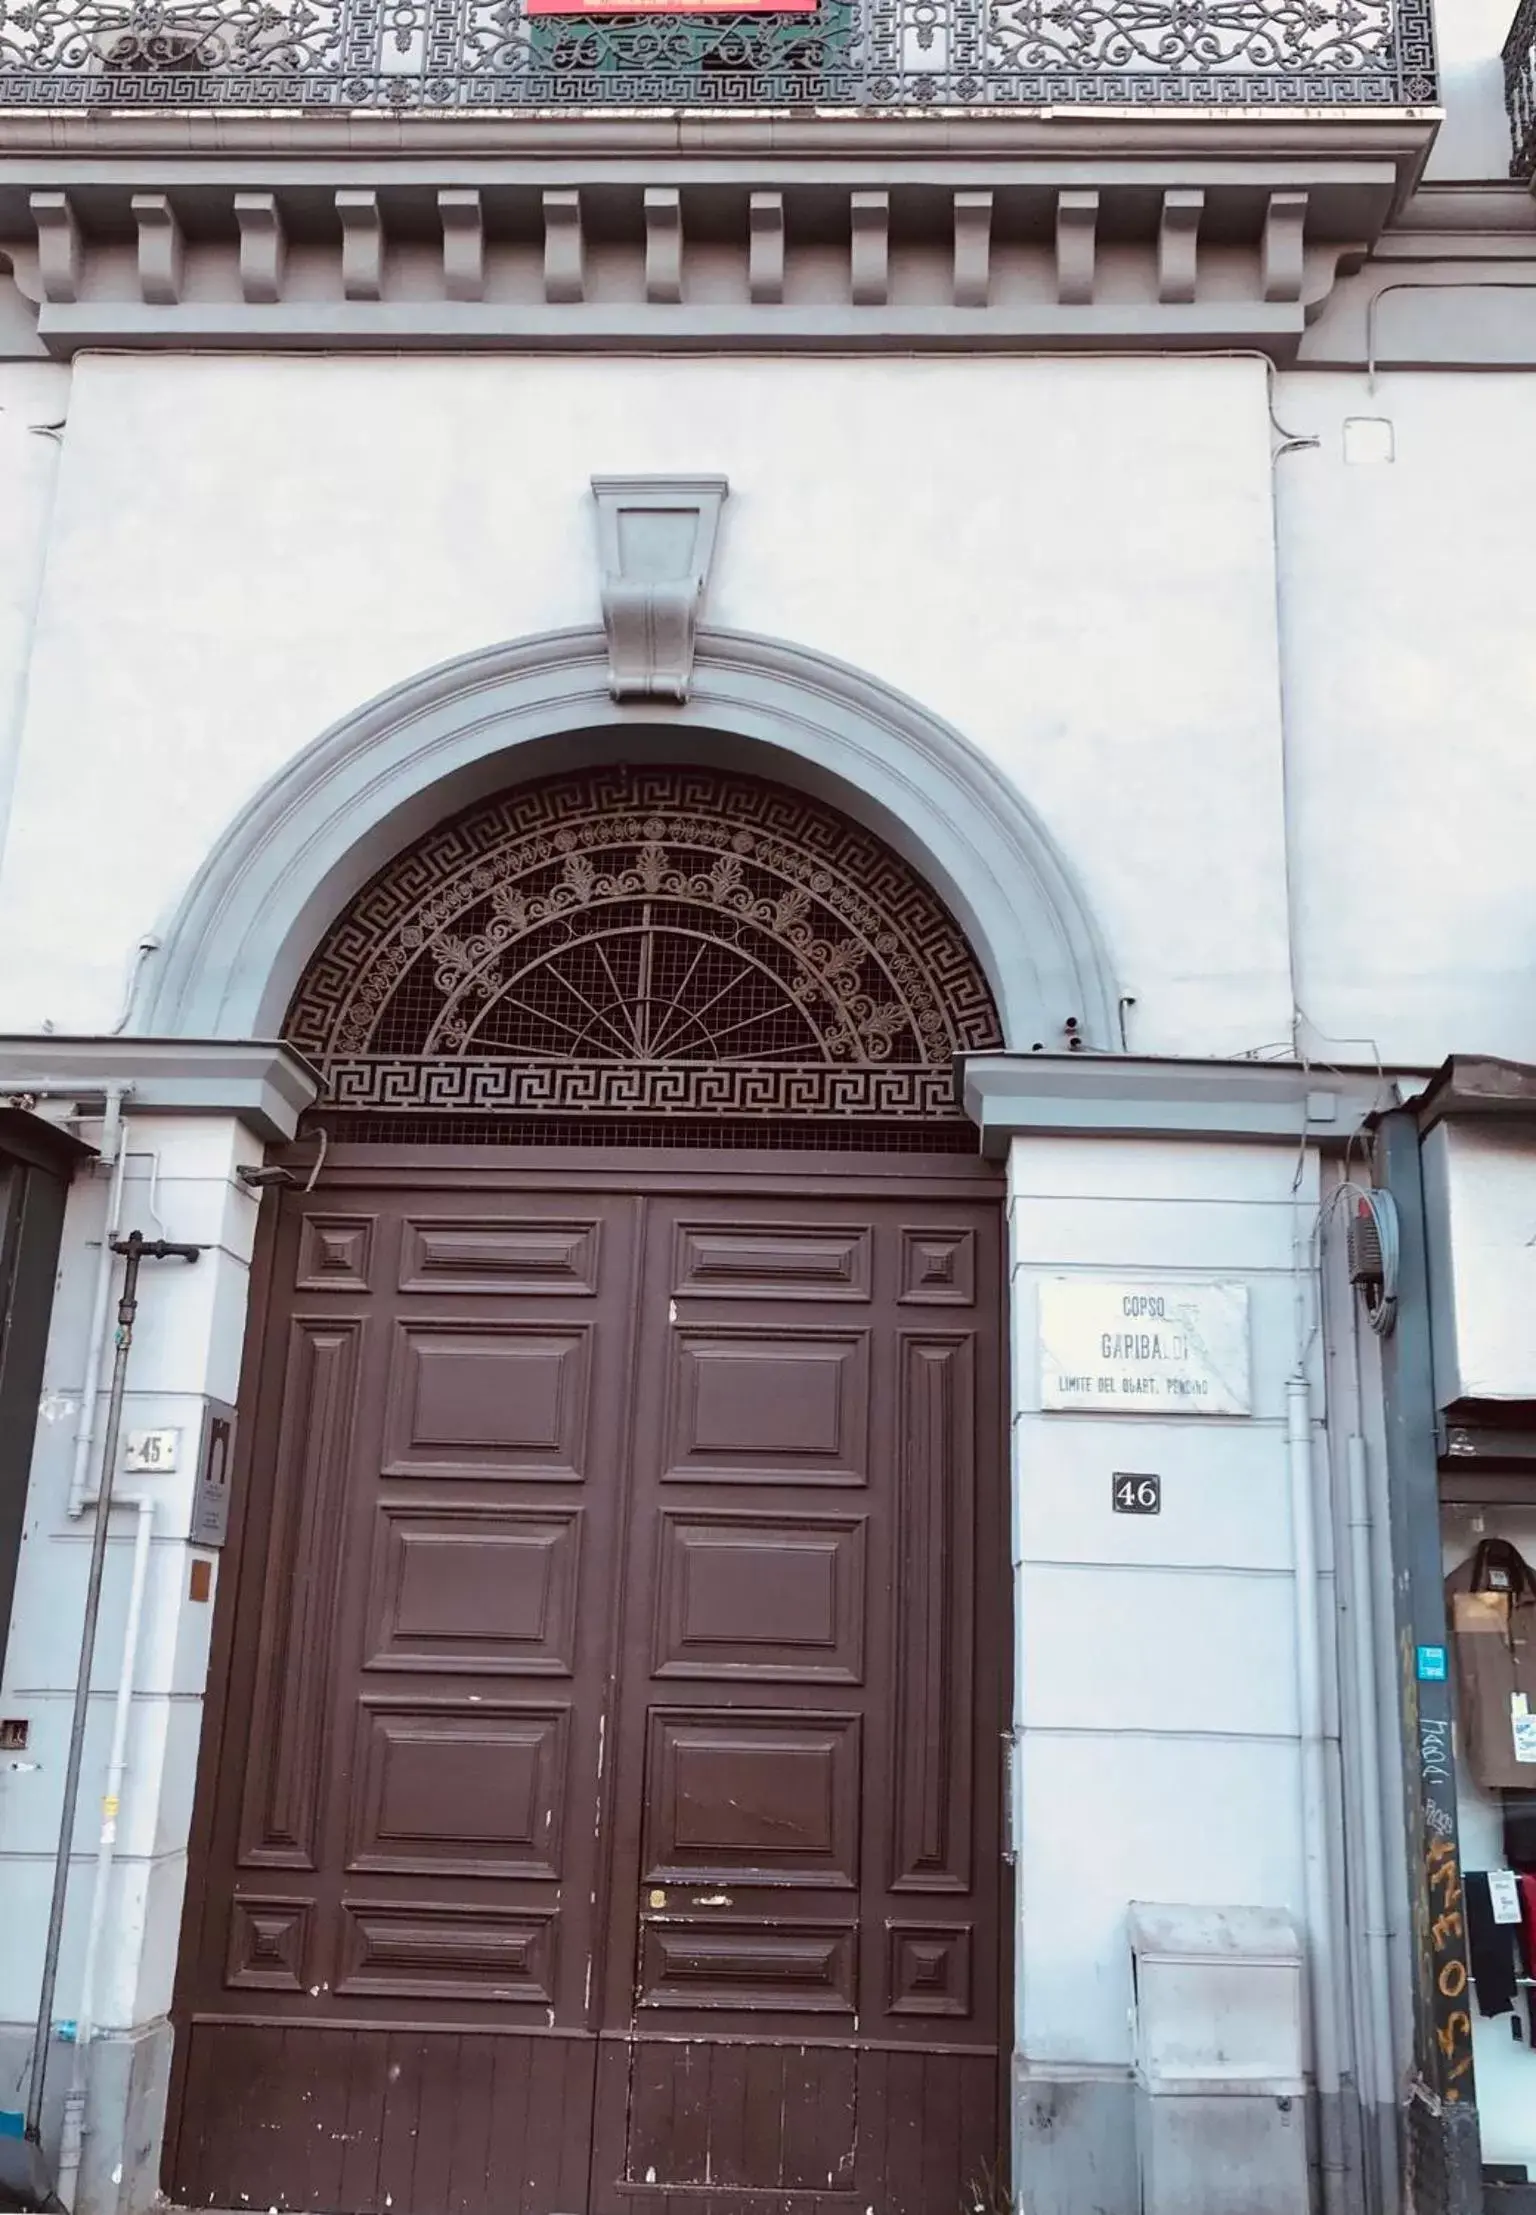 Facade/entrance in Napoli Central Gate